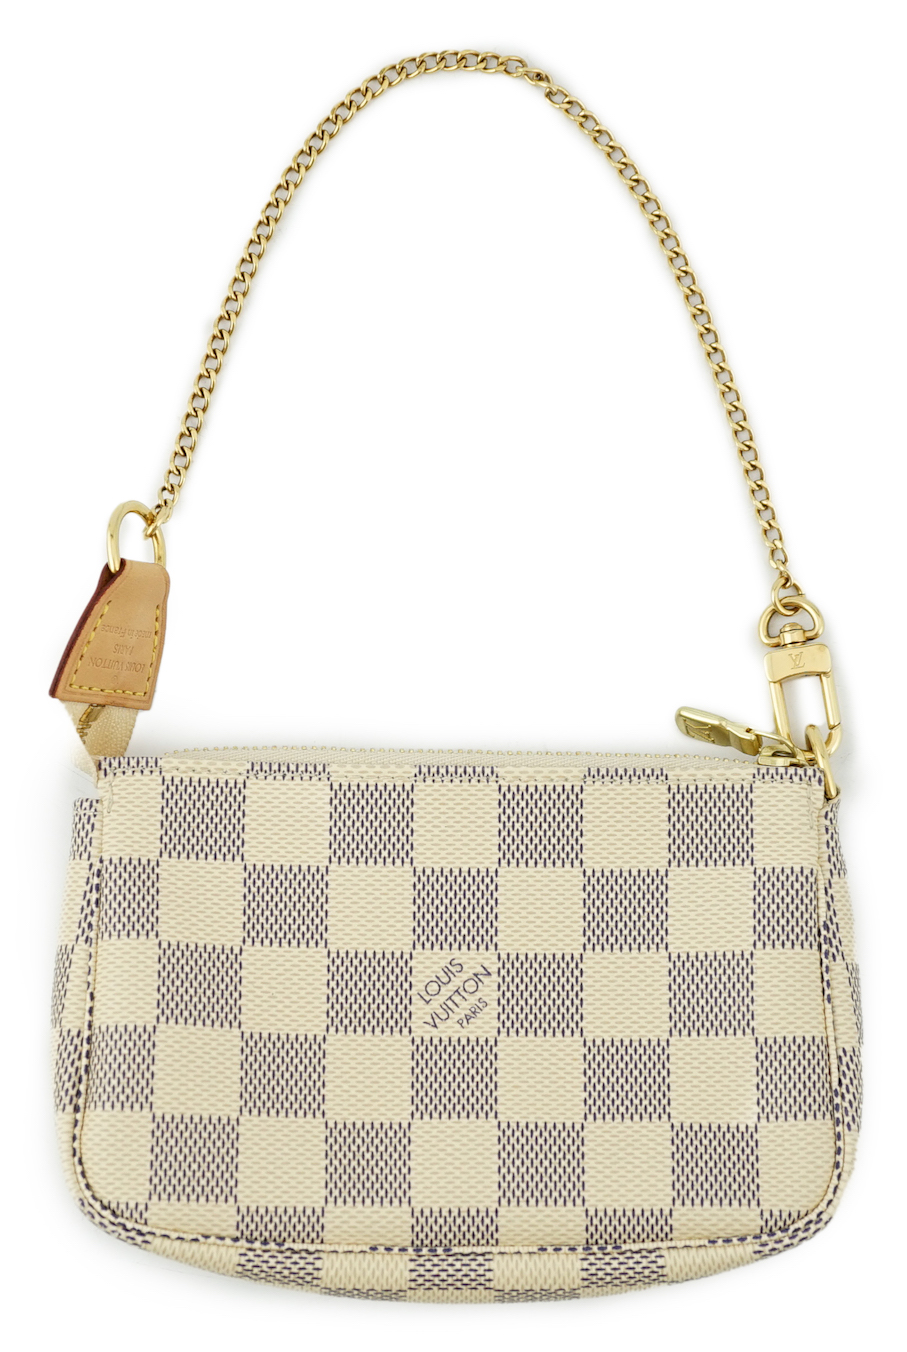 A Louis Vuitton white check mini handbag, height 10cm, width 15cm